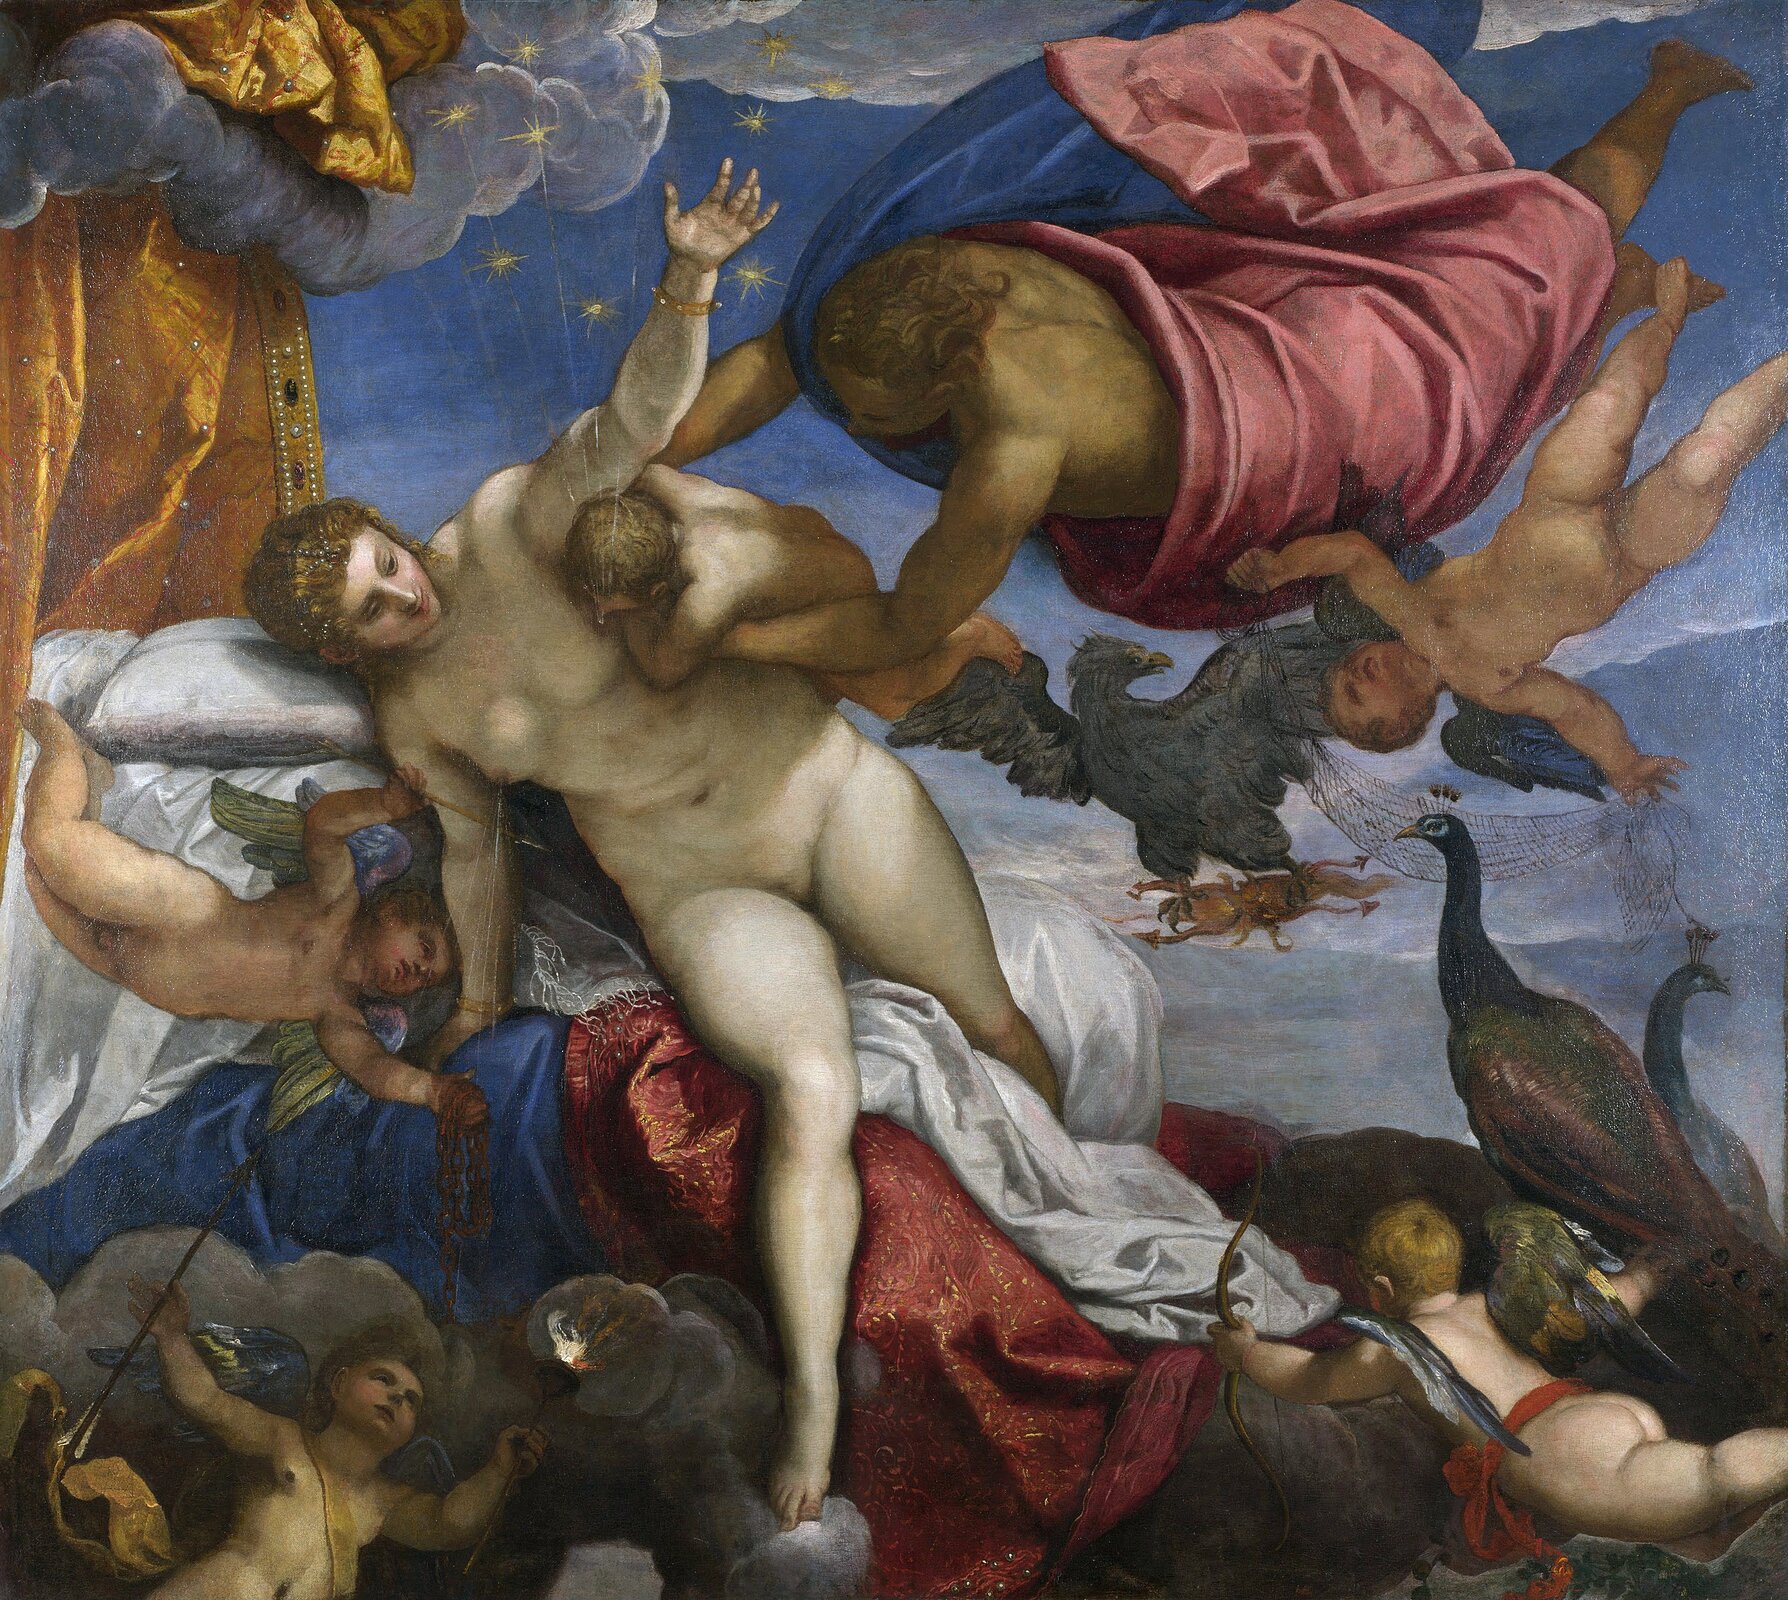 Dzieło autorstwa Jacopo Tintoretto pod tytułem „Powstanie drogi mlecznej” przedstawia Zeusa przytrzymującego małego Heraklesa przy piersi Hery. Na pierwszym planie widoczna jest naga, jasnoskóra i brązowowłosa kobieta - Hera, która karmi niemowlaka trzymanego przez Zeusa, ubranego w niebiesko-czerwone szaty. Jedna dłoń kobiety uniesiona jest ku górze, a druga spoczywa w dole, tuż przy nagim młodym chłopcu, przytrzymującym się kobiety. Nad piersią Hery widoczne są niewielkie gwiazdy unoszące się do chmur. U dołu obrazu widoczne są kupidyny, stworzenia przypominające małe dzieci, każdy z nich jest nagi bądź przepasany szarfą. Tuż pod Zeusem przedstawiono ptaki, z których jeden jest w locie, a dwa pozostałe w bezruchu. 